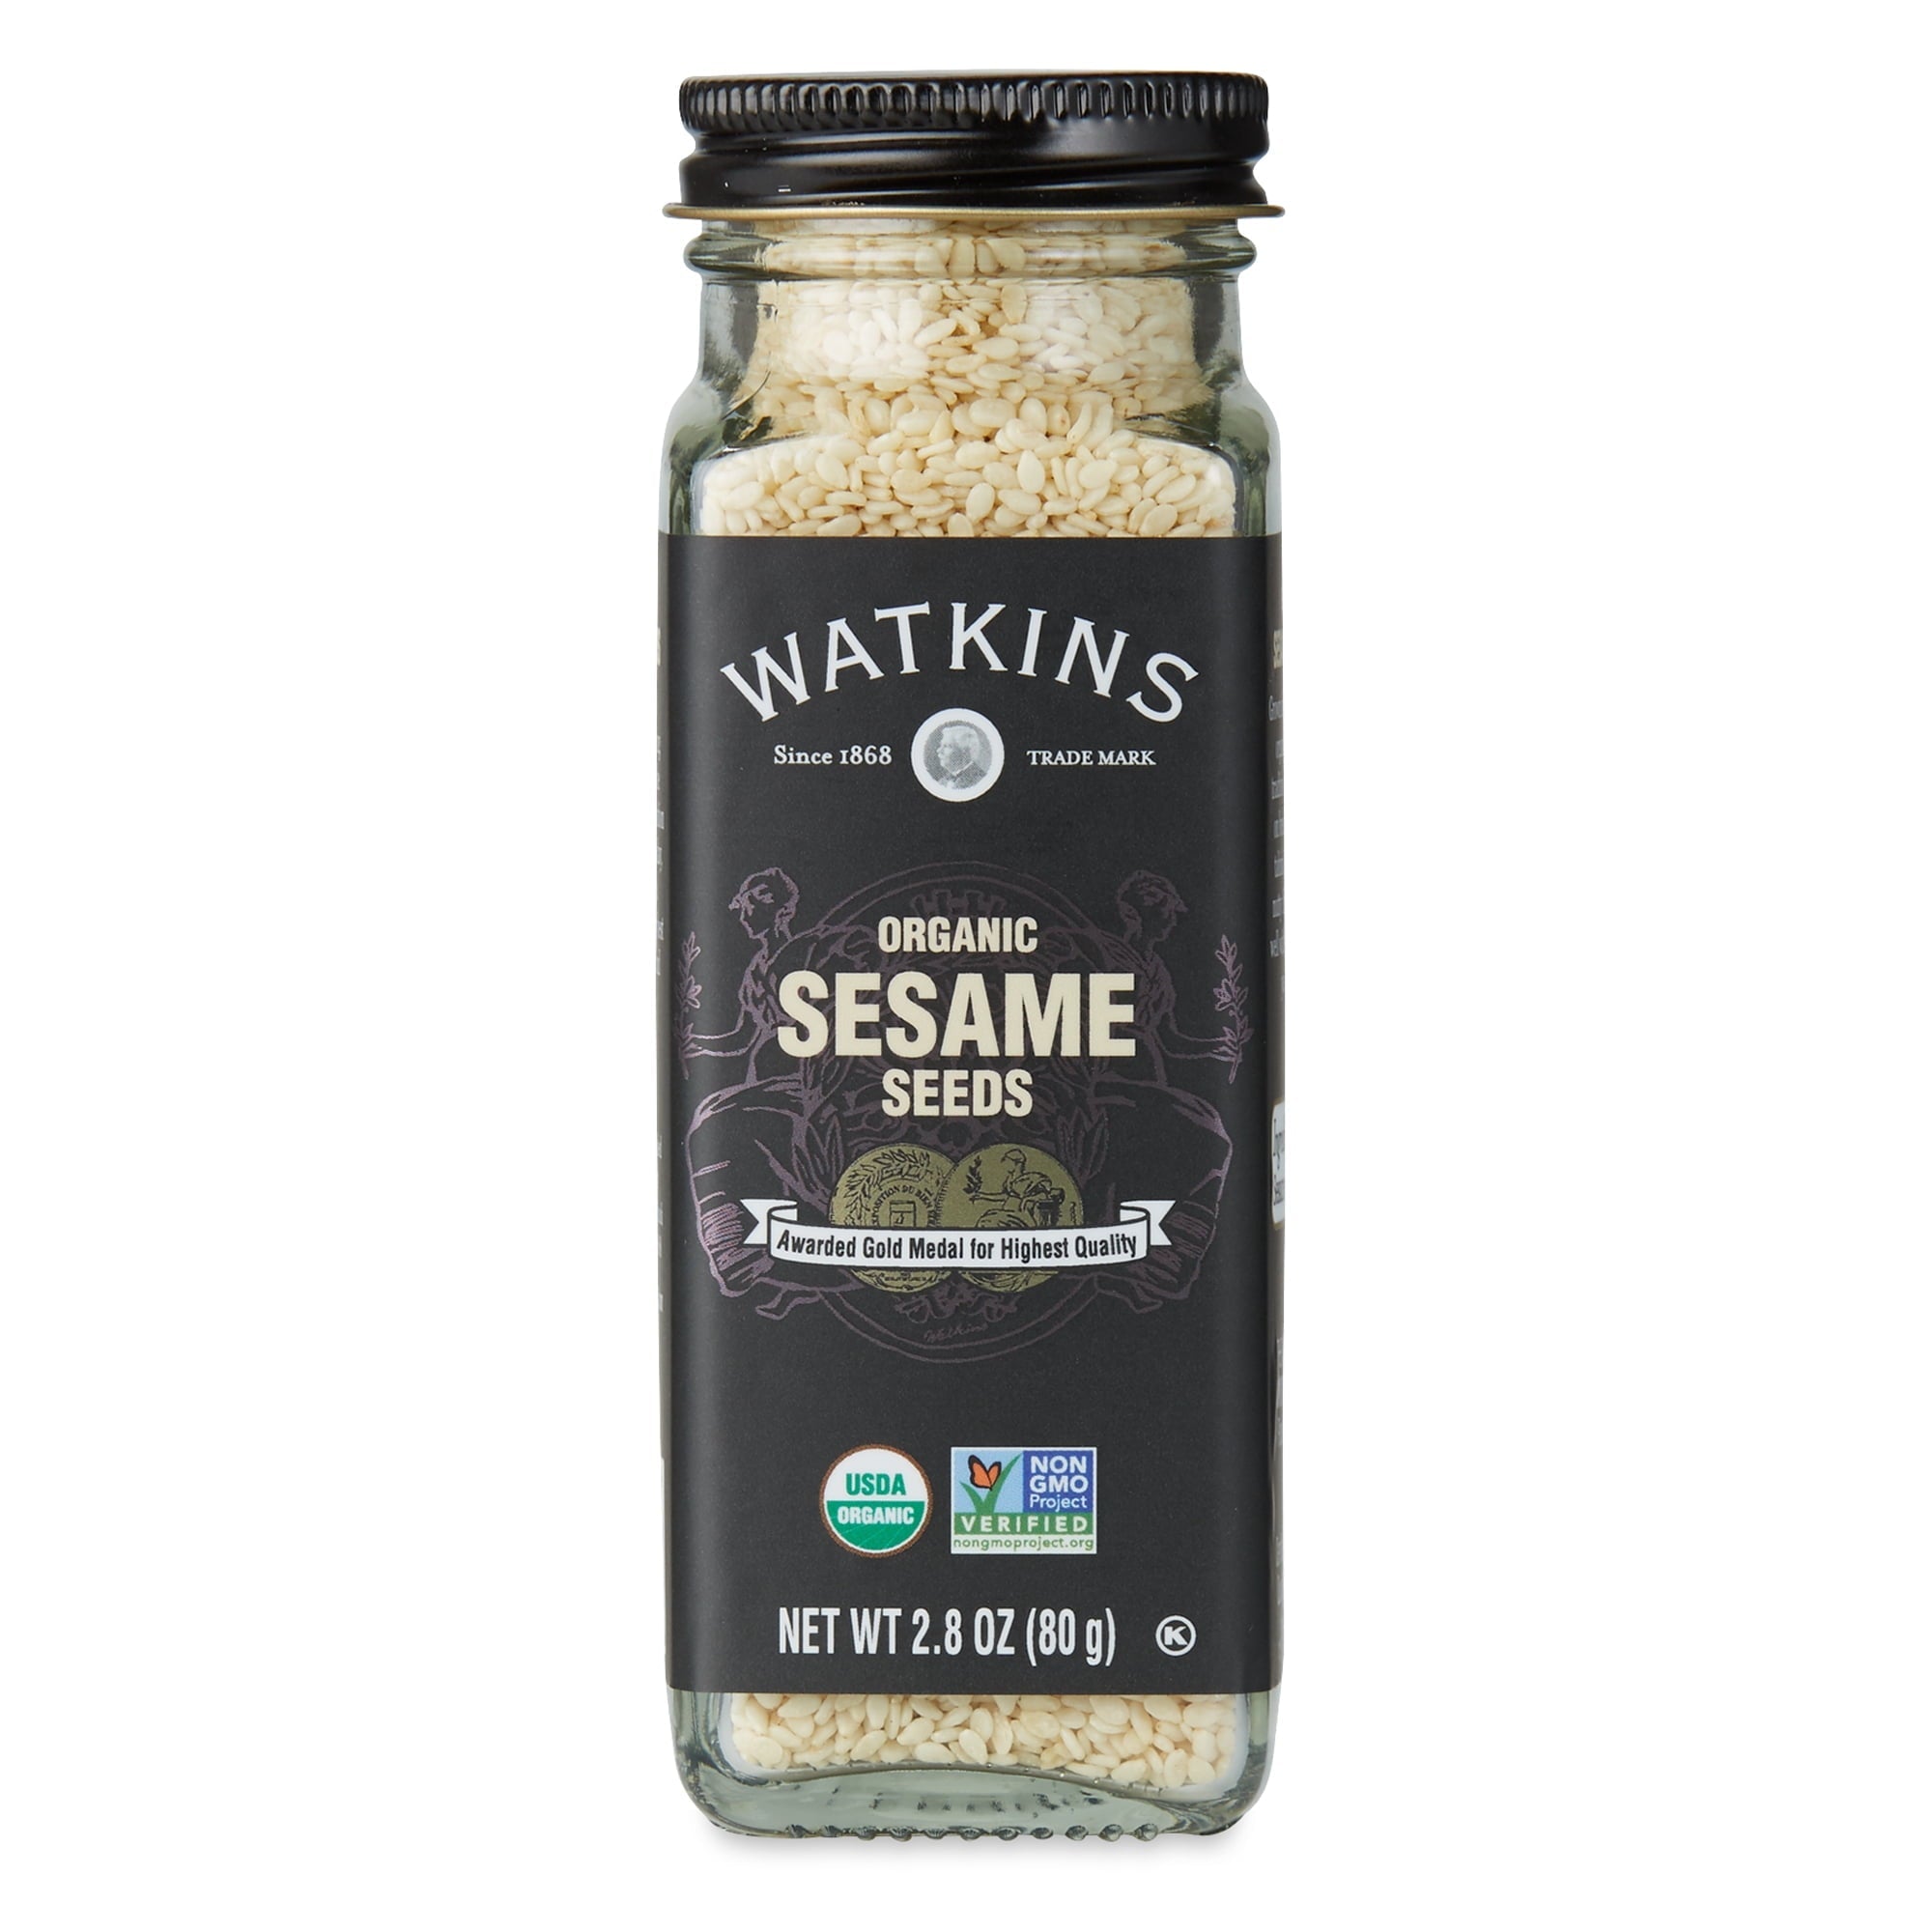 Watkins Sesame Seed 2.8 oz Bag